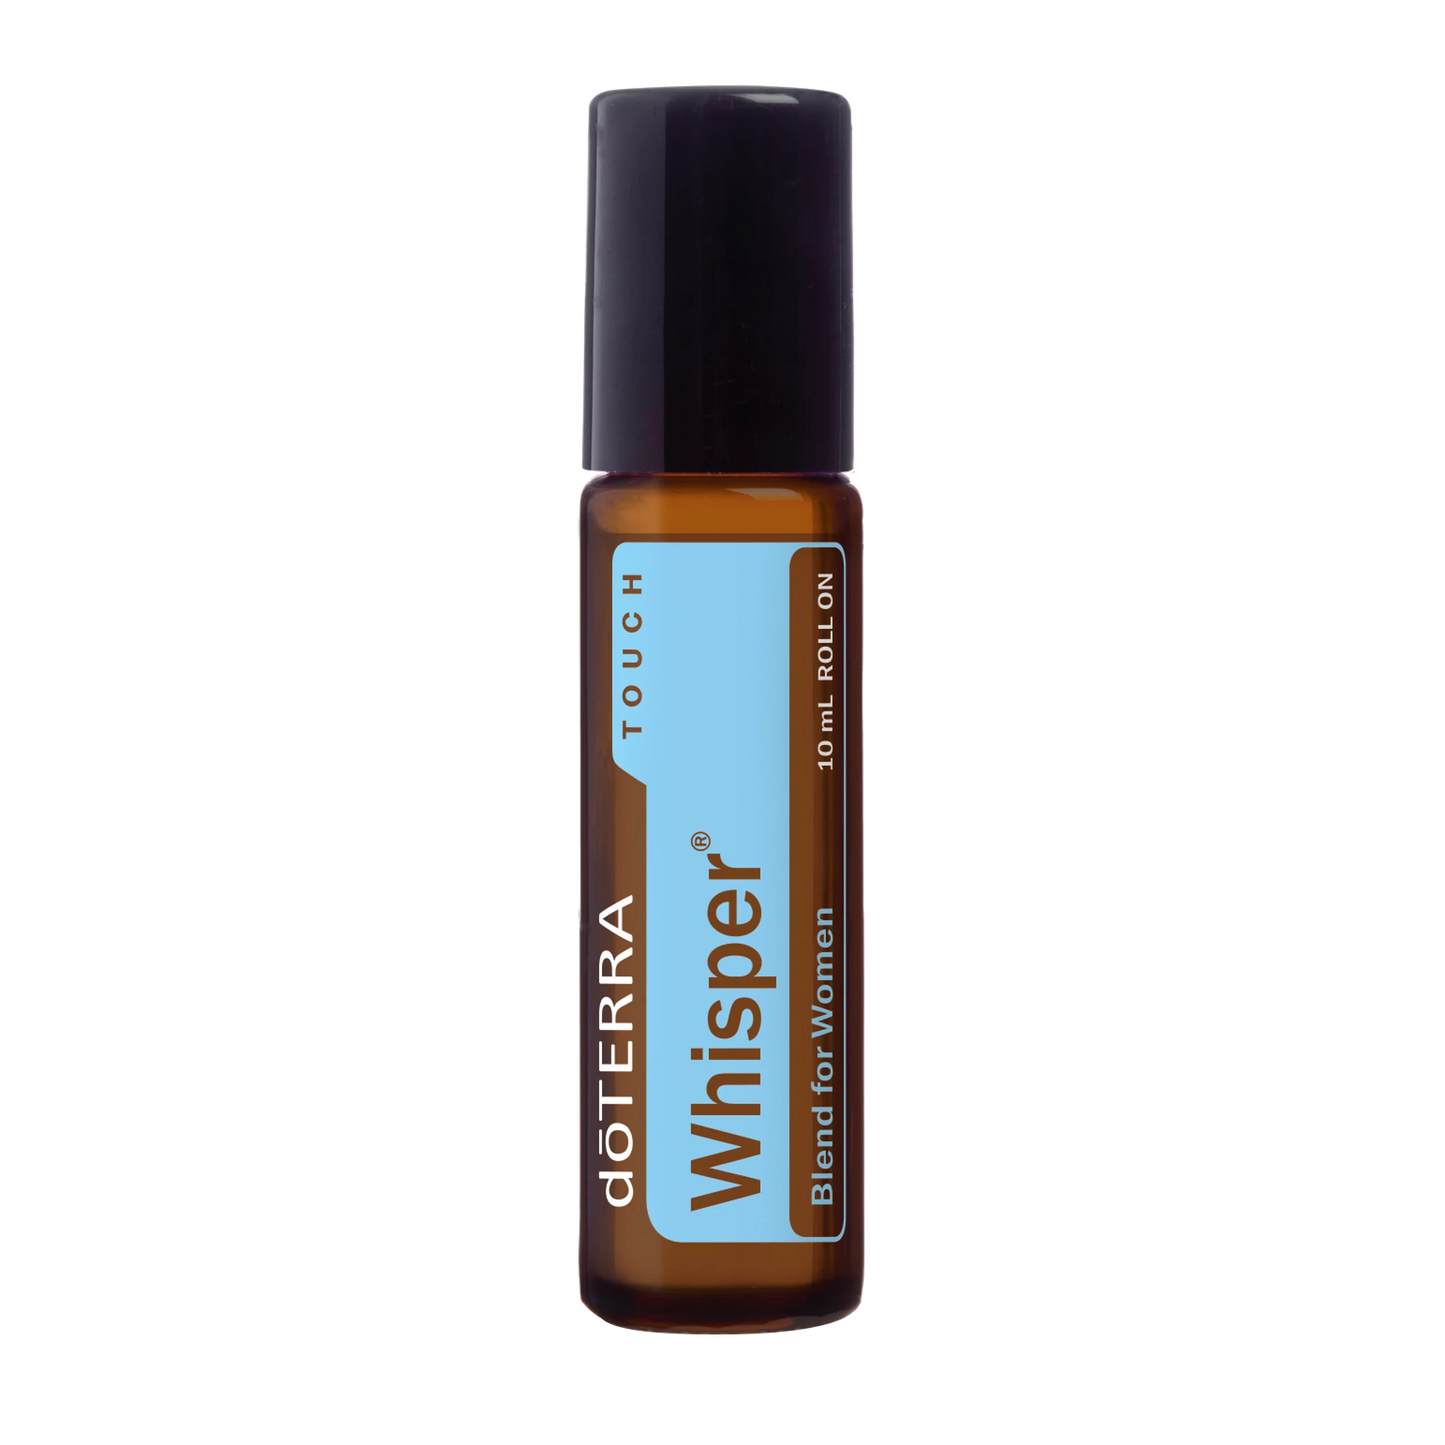 Whisper® Touch Essential Oil Blend for Women